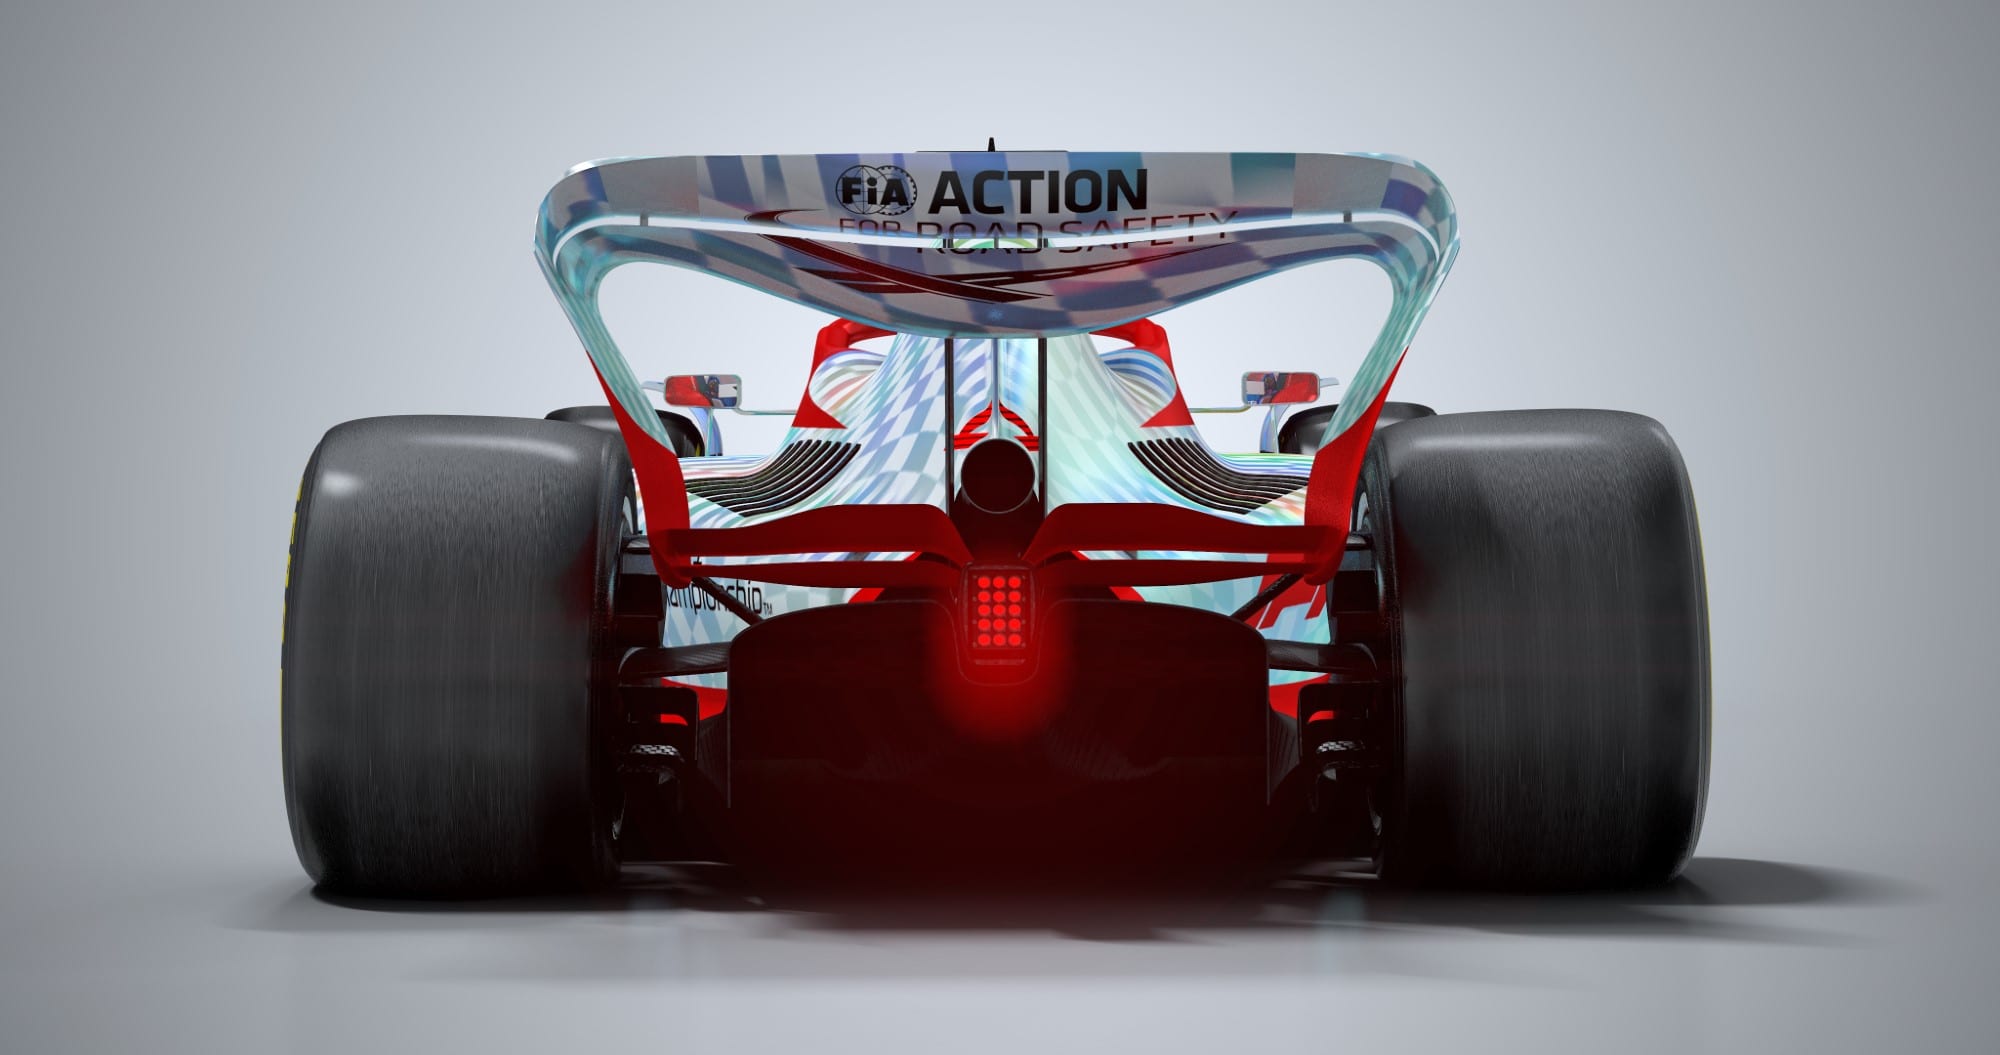 Galeria as imagens do novo carro da F1 para 2022 Notícia de F1